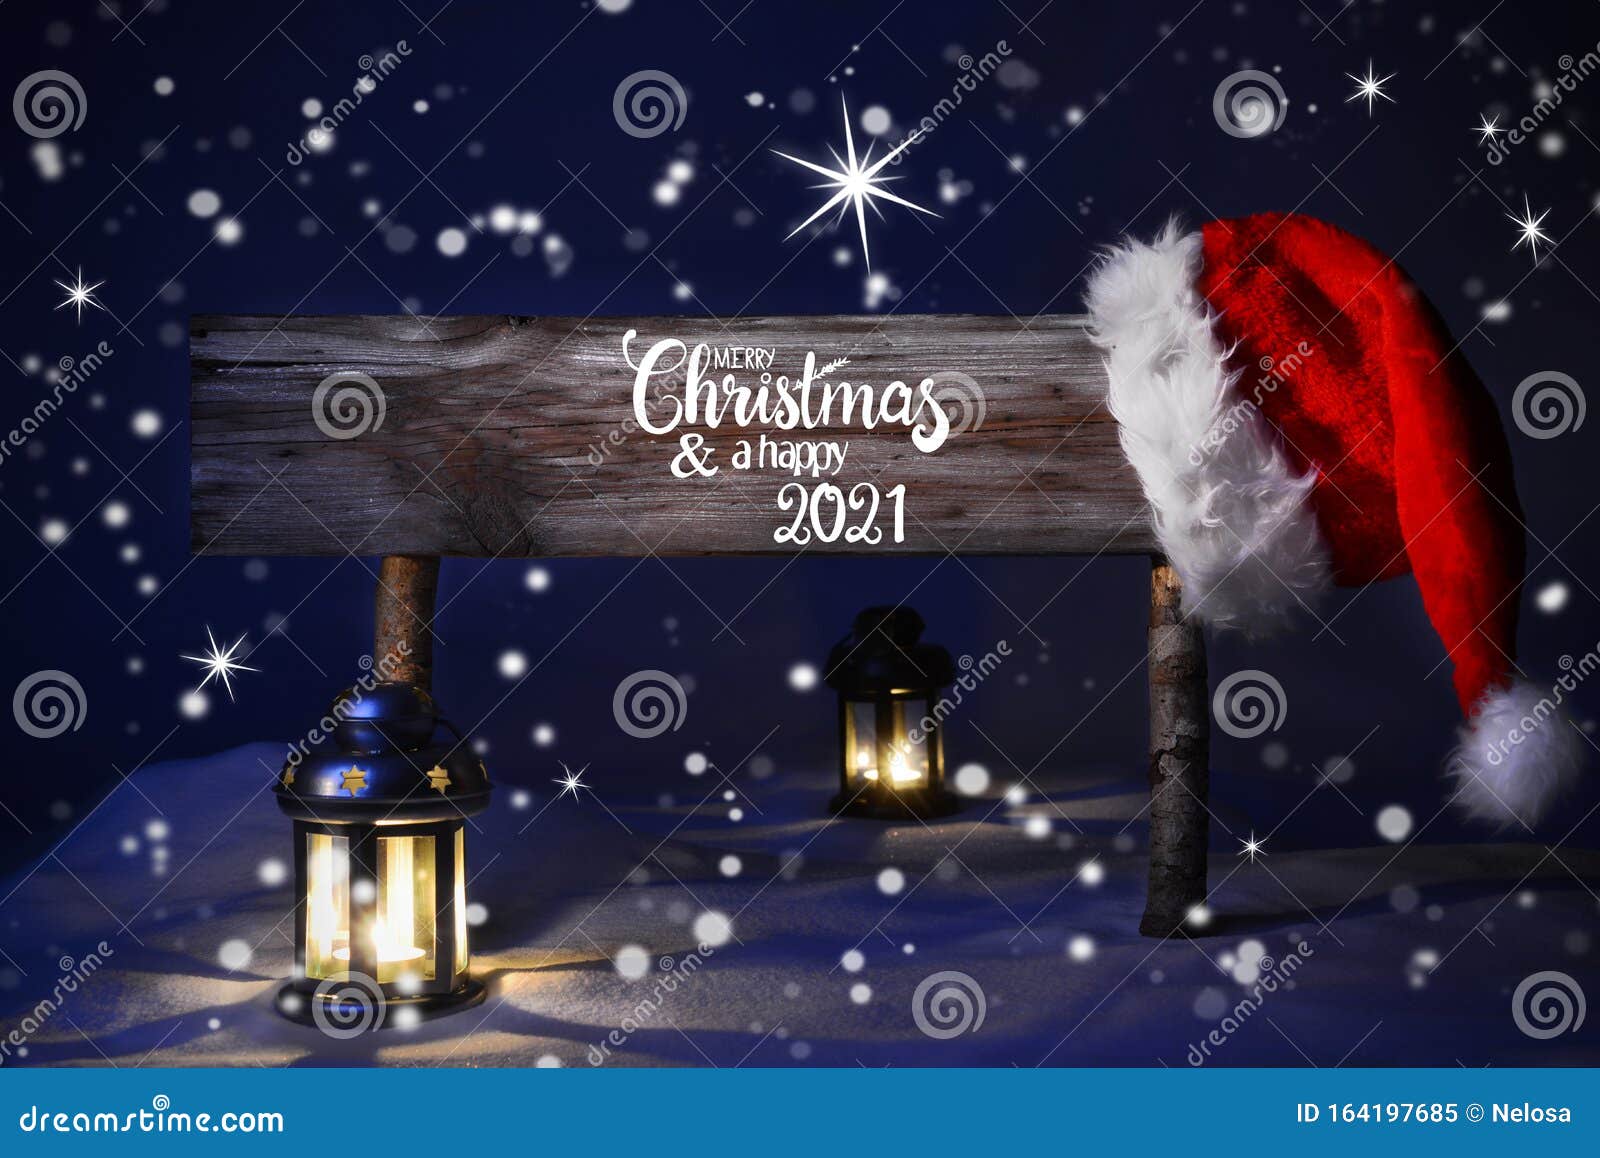 Notte Di Natale Con Neve Lampada Babbo Natale Buon Natale E Buon 2021 Immagine Stock Immagine Di Stagione Luce 164197685